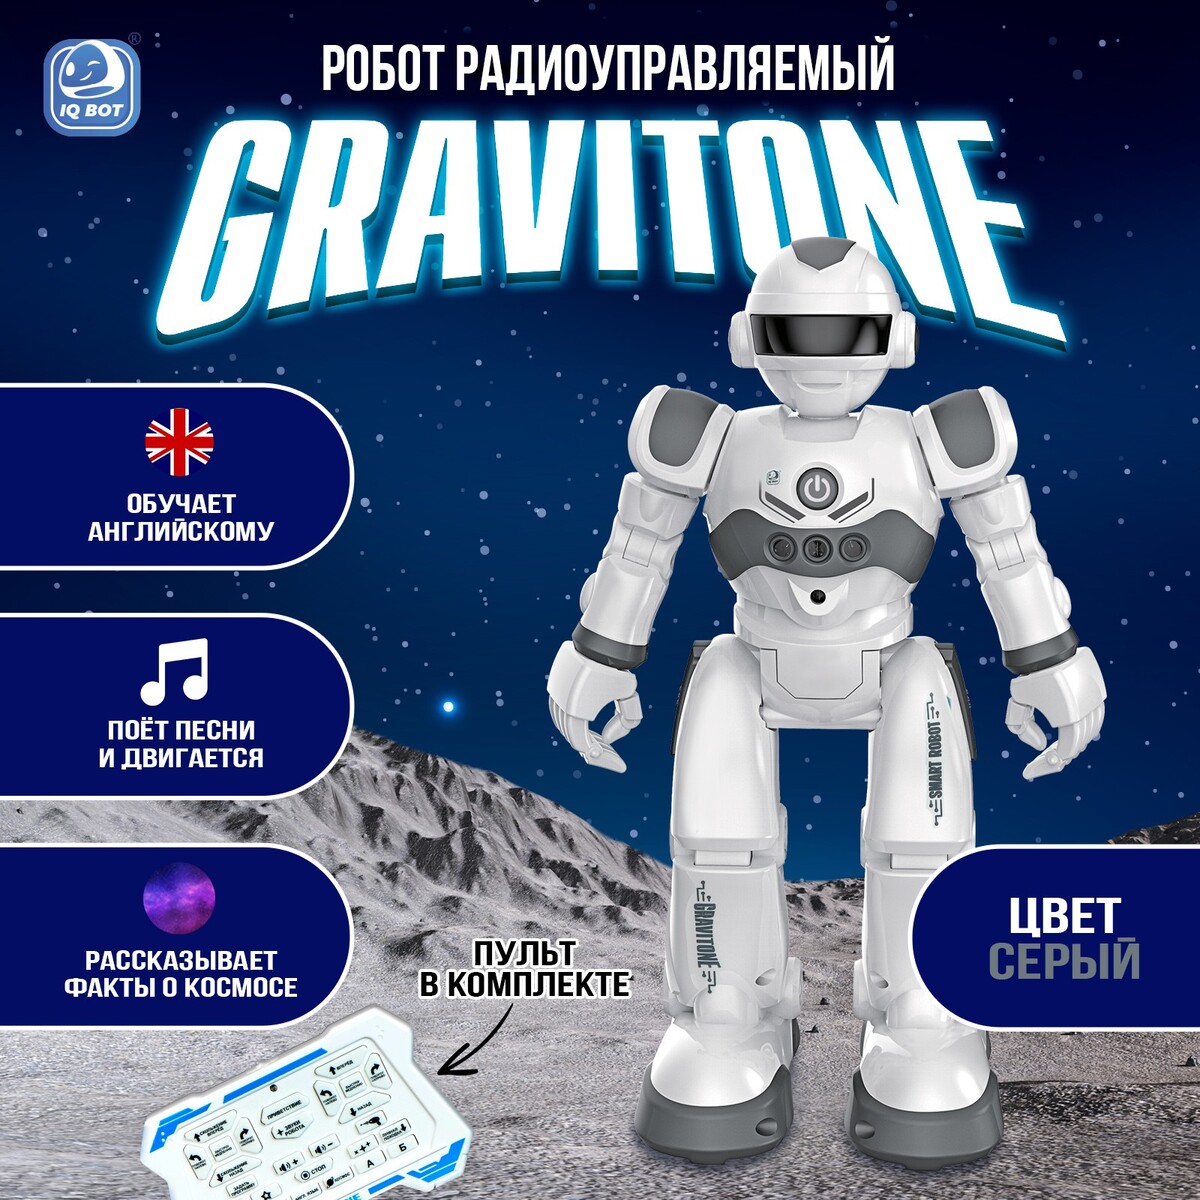 Робот радиоуправляемый iq bot gravitone, русское озвучивание, цвет серый русское театральное зарубежье